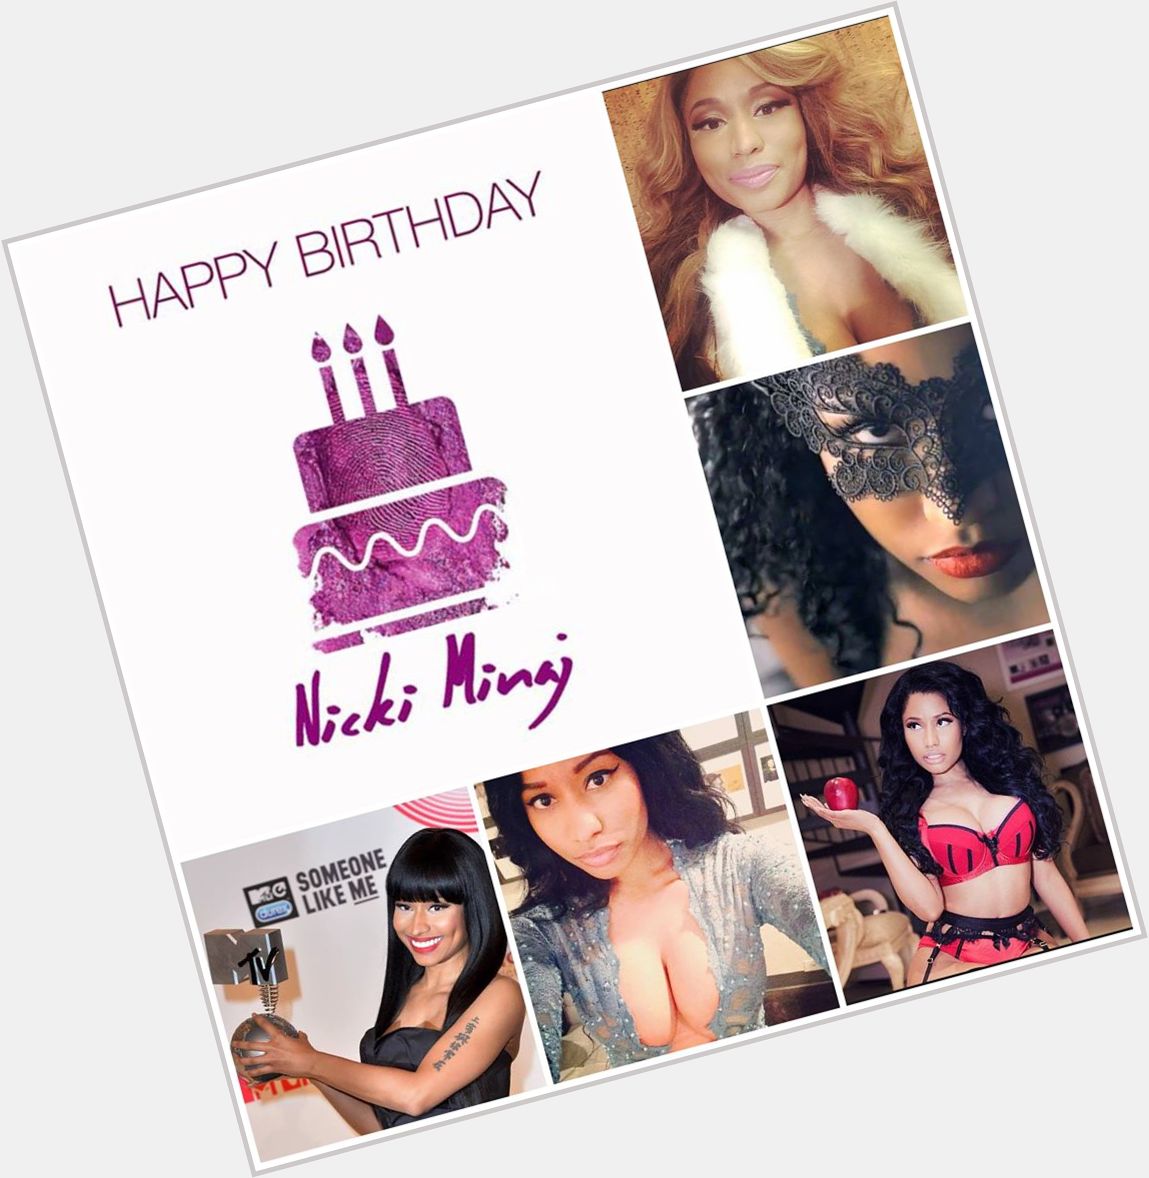  Happy Birthday Nicki Minaj 